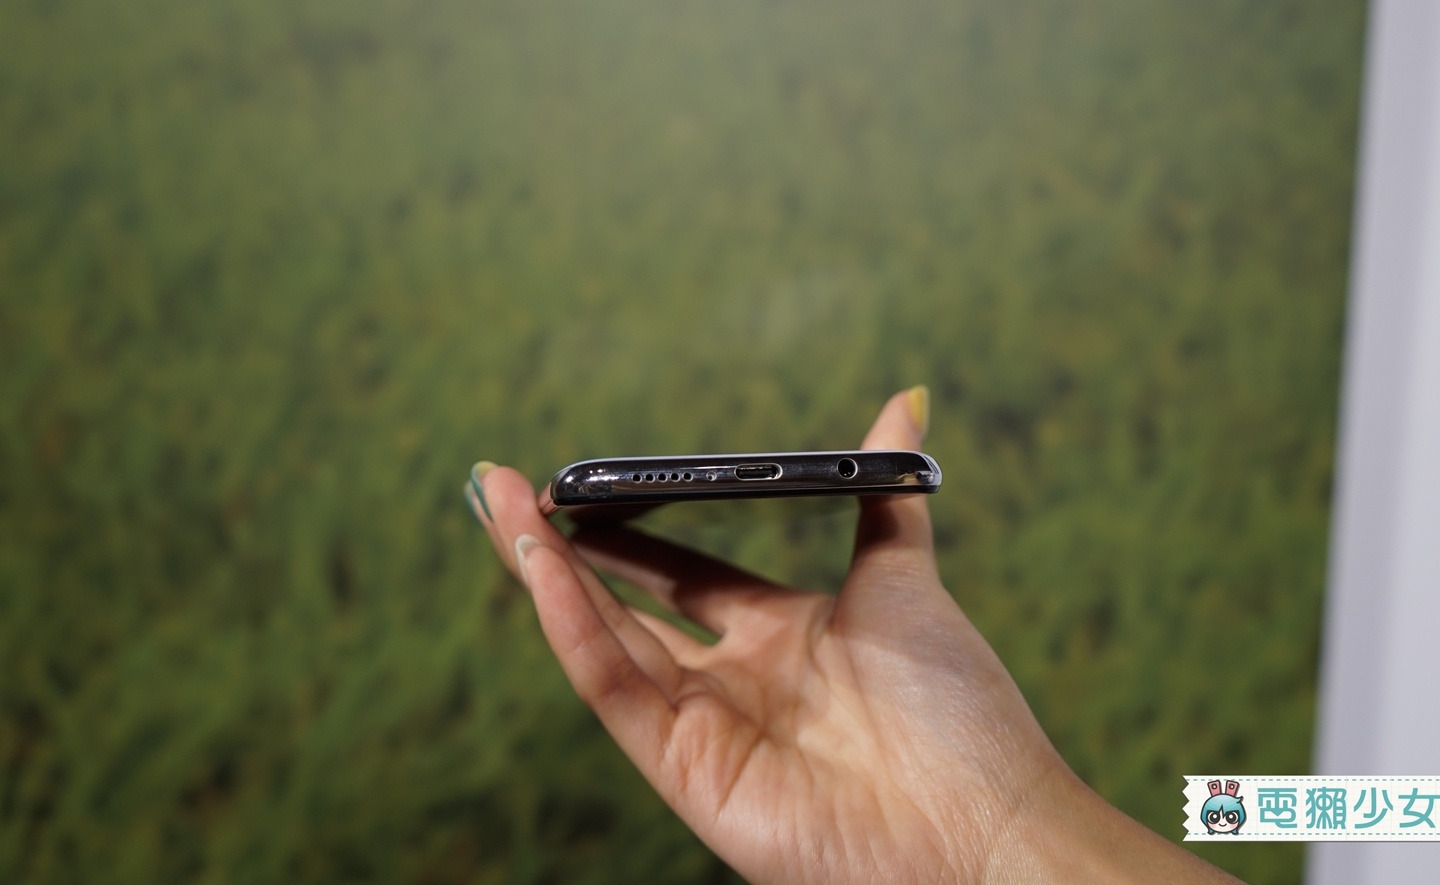 出門｜Redmi Note 8 Pro 小米首款6400萬像素的四鏡頭手機，拍出的照片可直接輸出成超大型海報，售價八千有找！